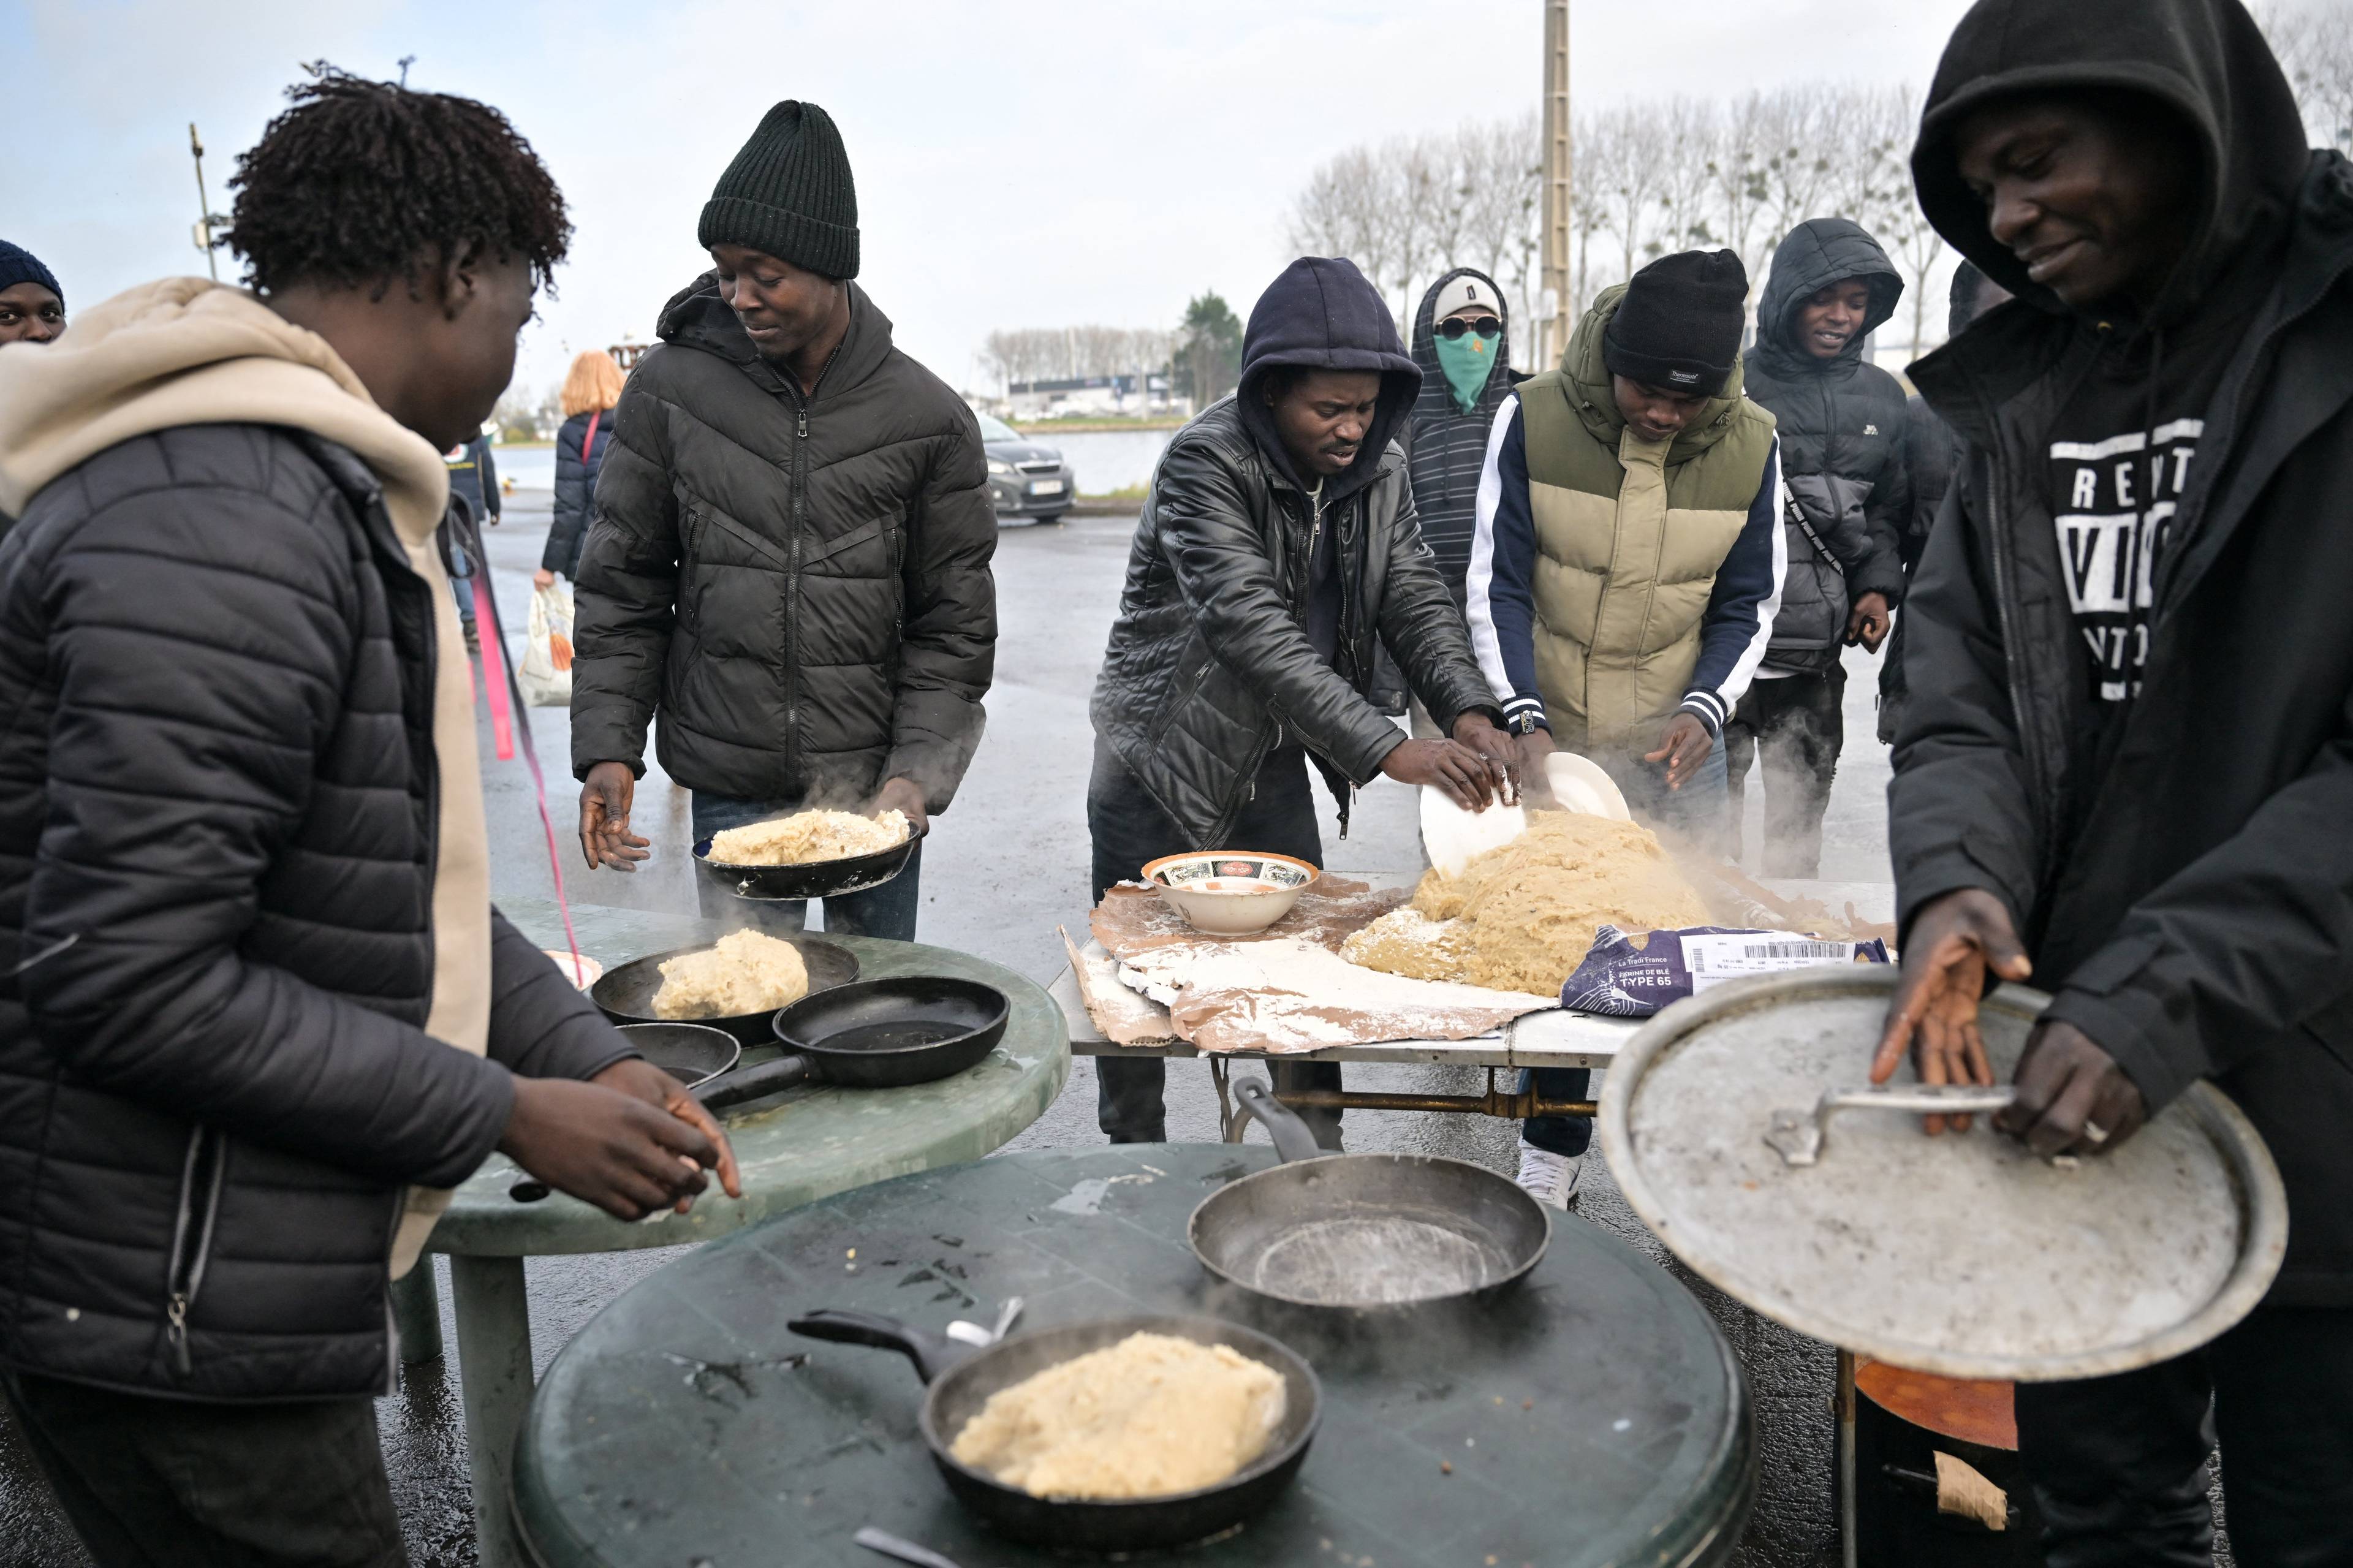 Czarnoskórzy migranci z Sudanu we Francji przygotowują wspólnie posiłek